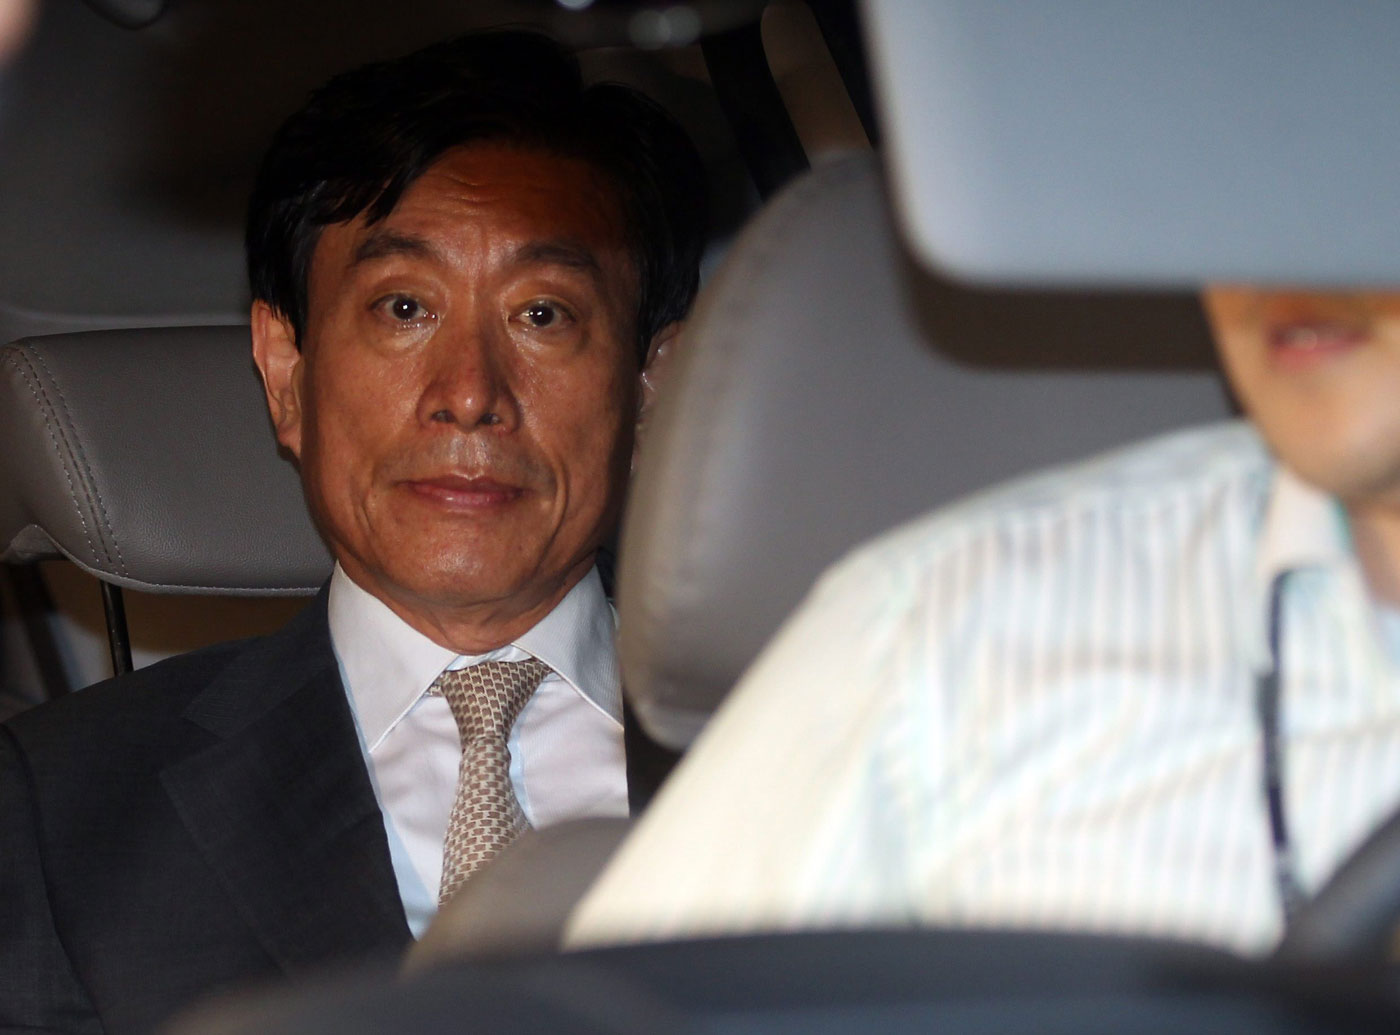 Condenan a cuatro años al exjefe de inteligencia de Seúl por mediar en elecciones